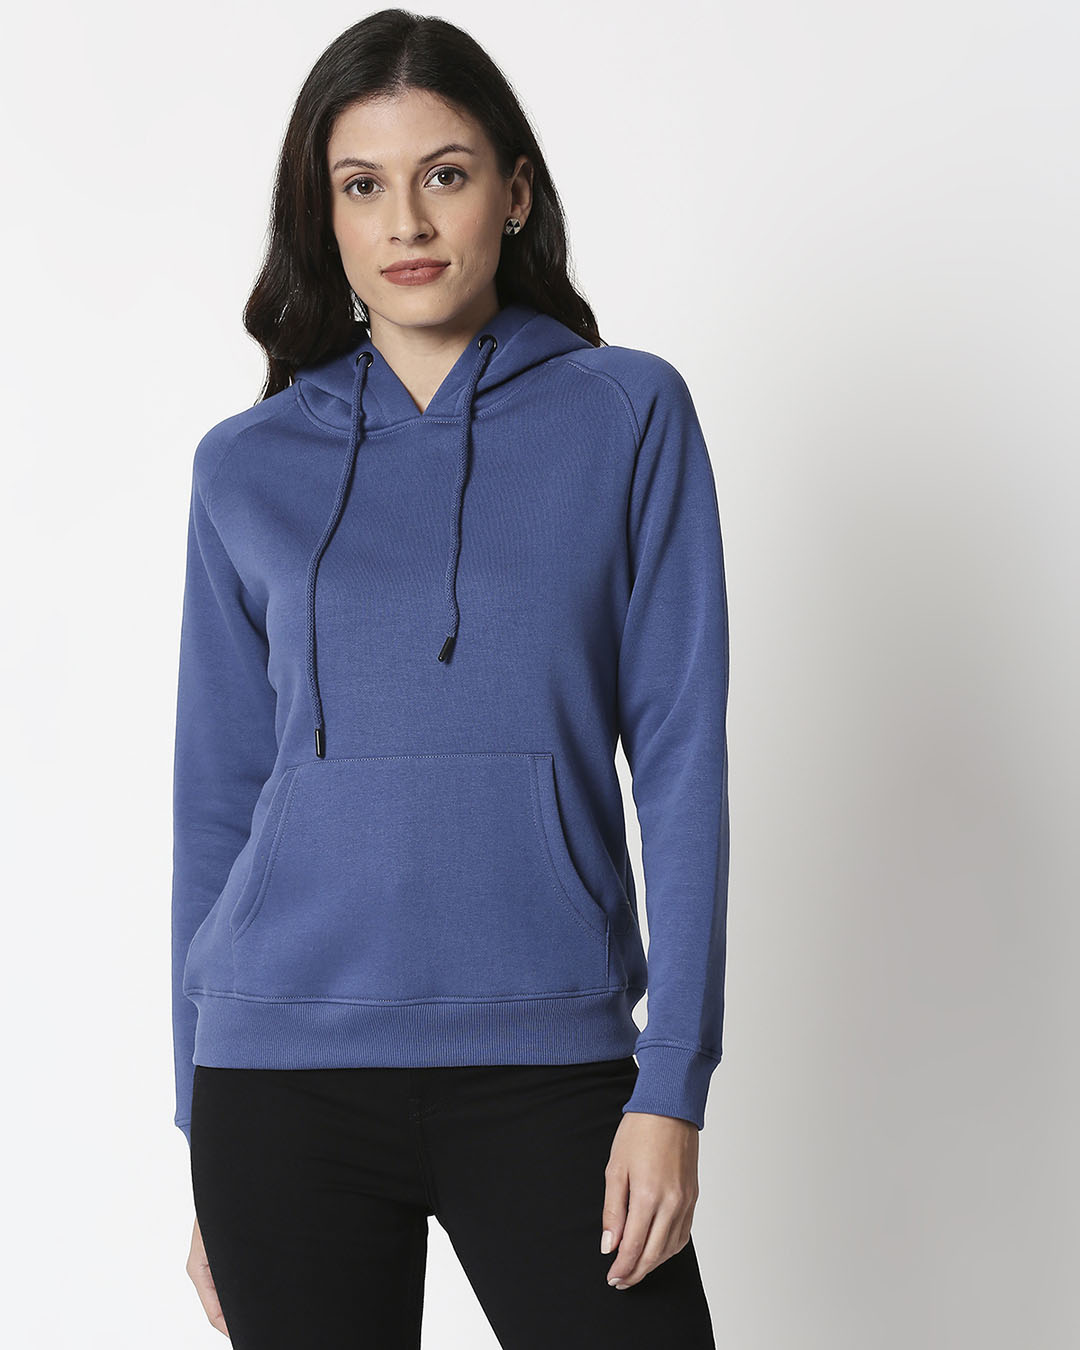 Buy Ensign Blue Basic Hoodie Sweatshirt Online at Bewakoof